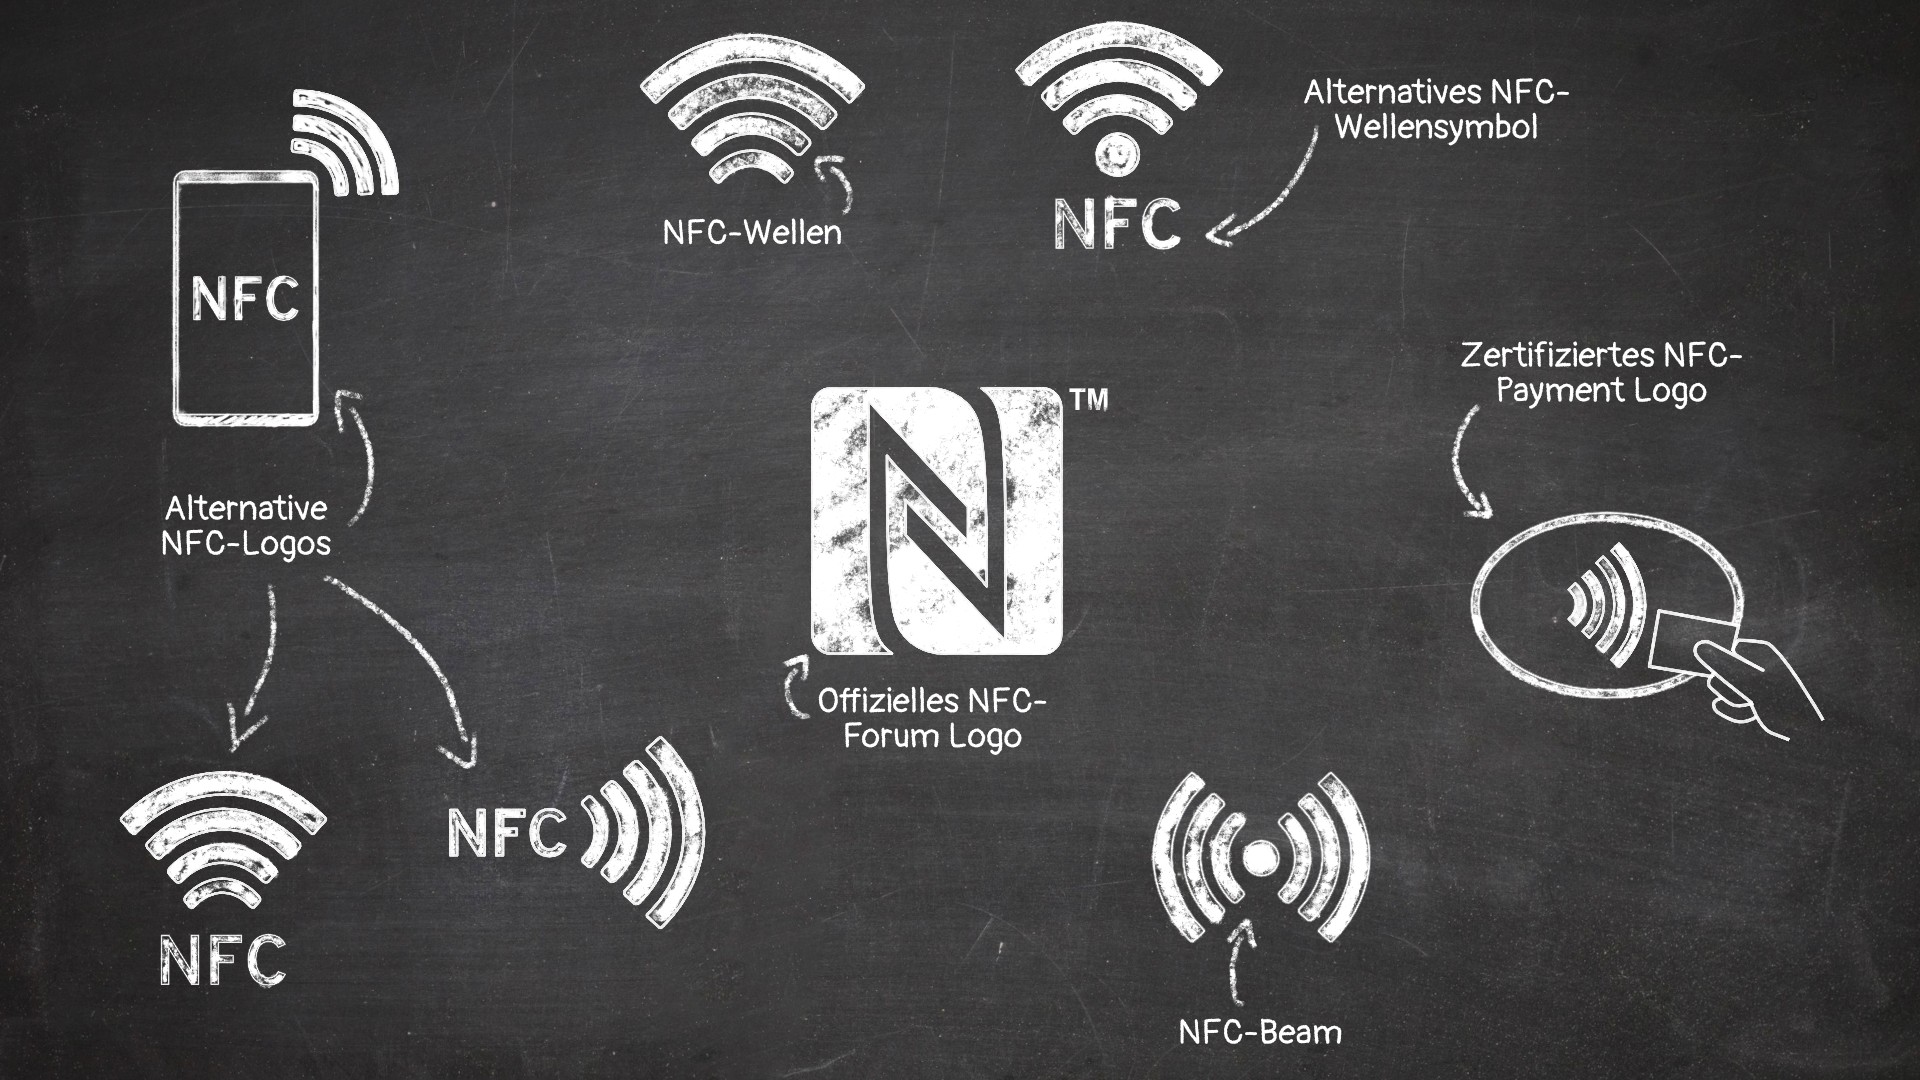 NFC-Logos - NFC-Produkte effektiv kennzeichnen